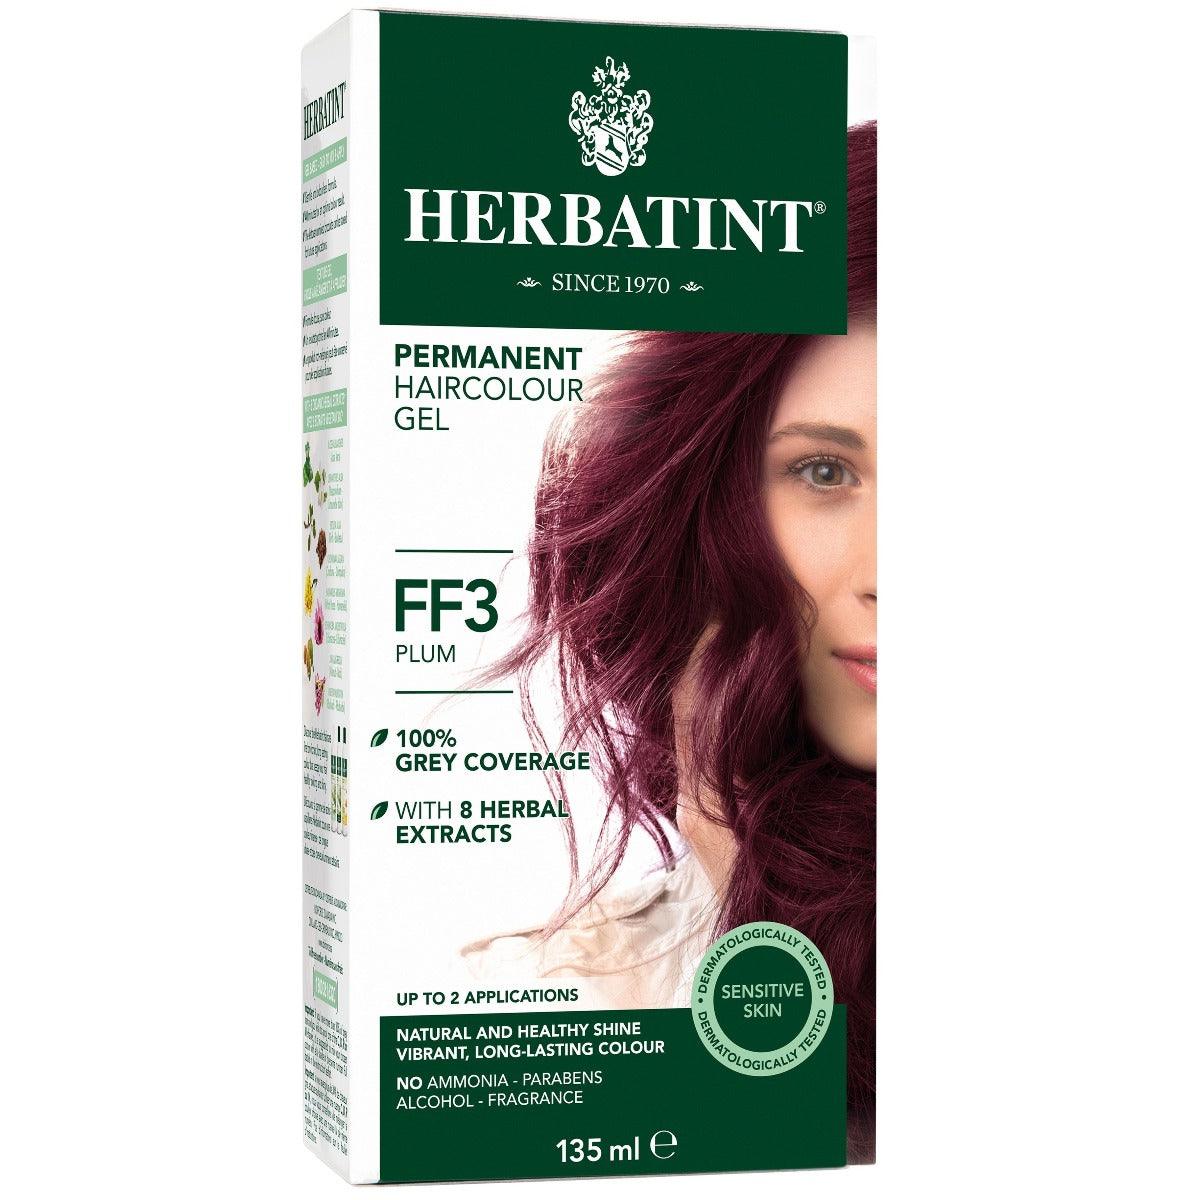 Herbatint Permanent Herbal HairColour Gel FF3 Plum Hair Colour at Village Vitamin Store